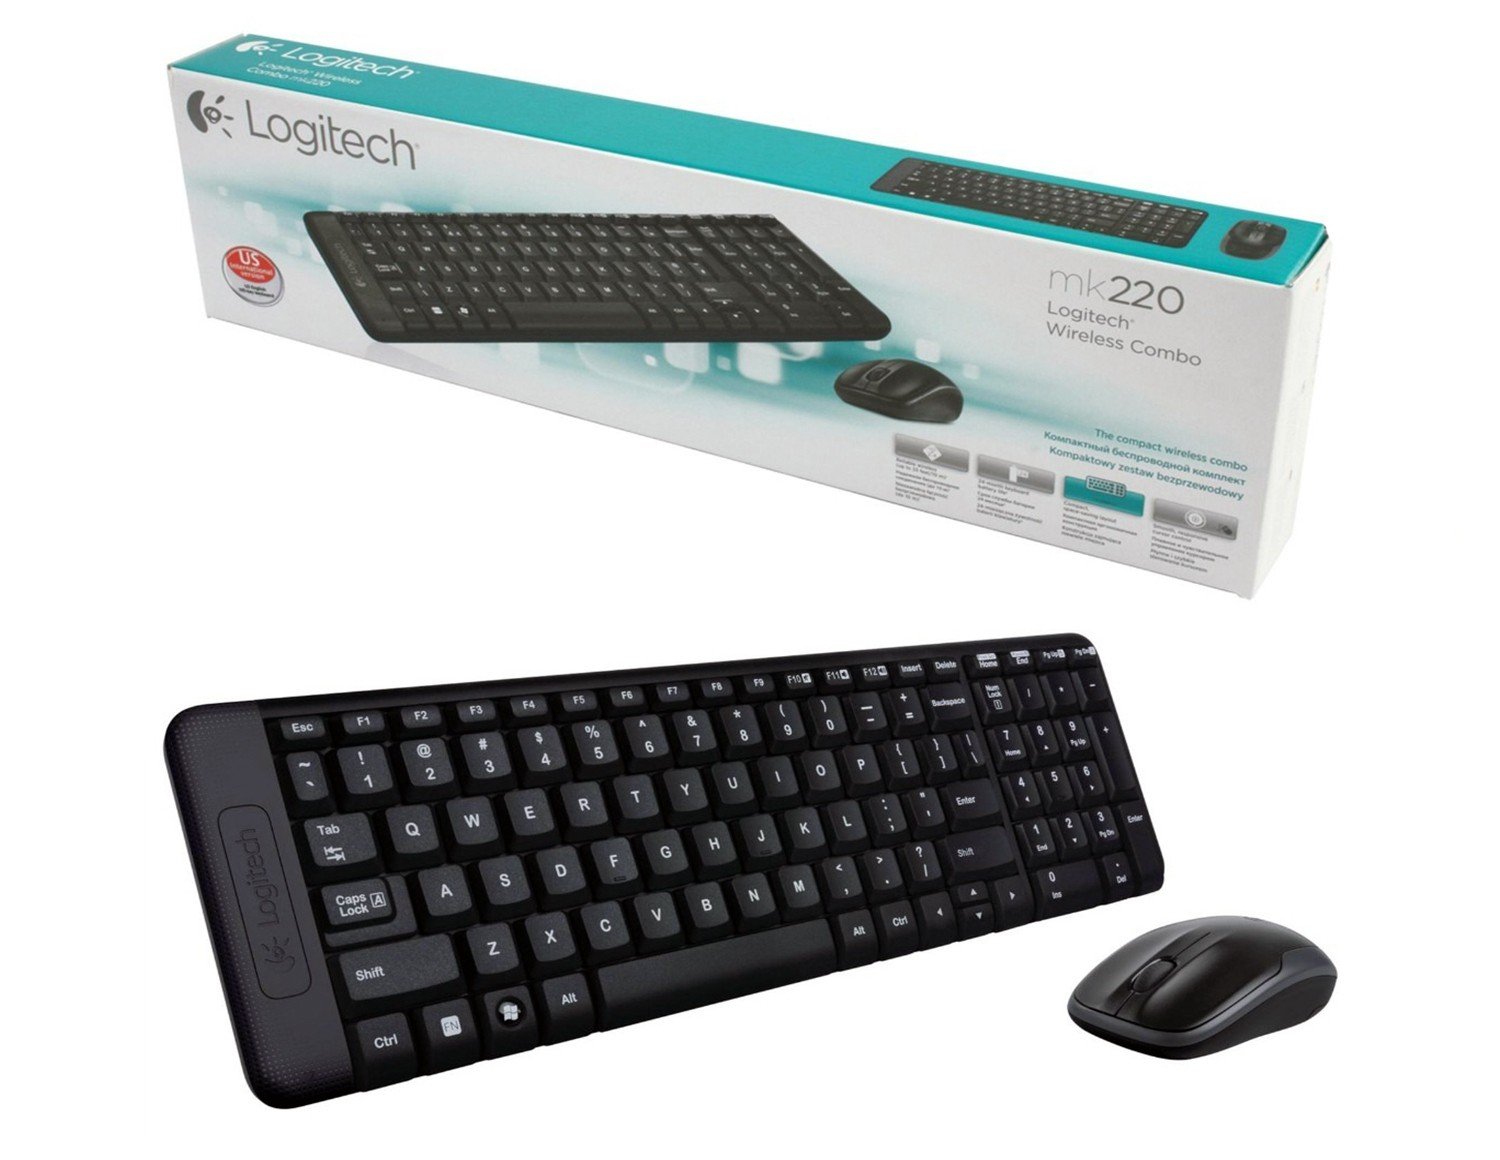 ซื้อ เมาส์และคีย์บอร์ด Logitech Keyboard + Mouse Wireless Combo MK220 เมาส์ไร้สาย, คีย์บอร์ดไร้สาย, เมาส์, คีย์บอร์ด, อุปกรณ์คอมพิวเตอร์, Mouse, MouseWireless, Keyboard, Keyboard Wireless ราคาพิเศษ พร้อมโปรโมชั่นลดราคา ส่งฟรี ส่งเร็ว ทั่วไทย  